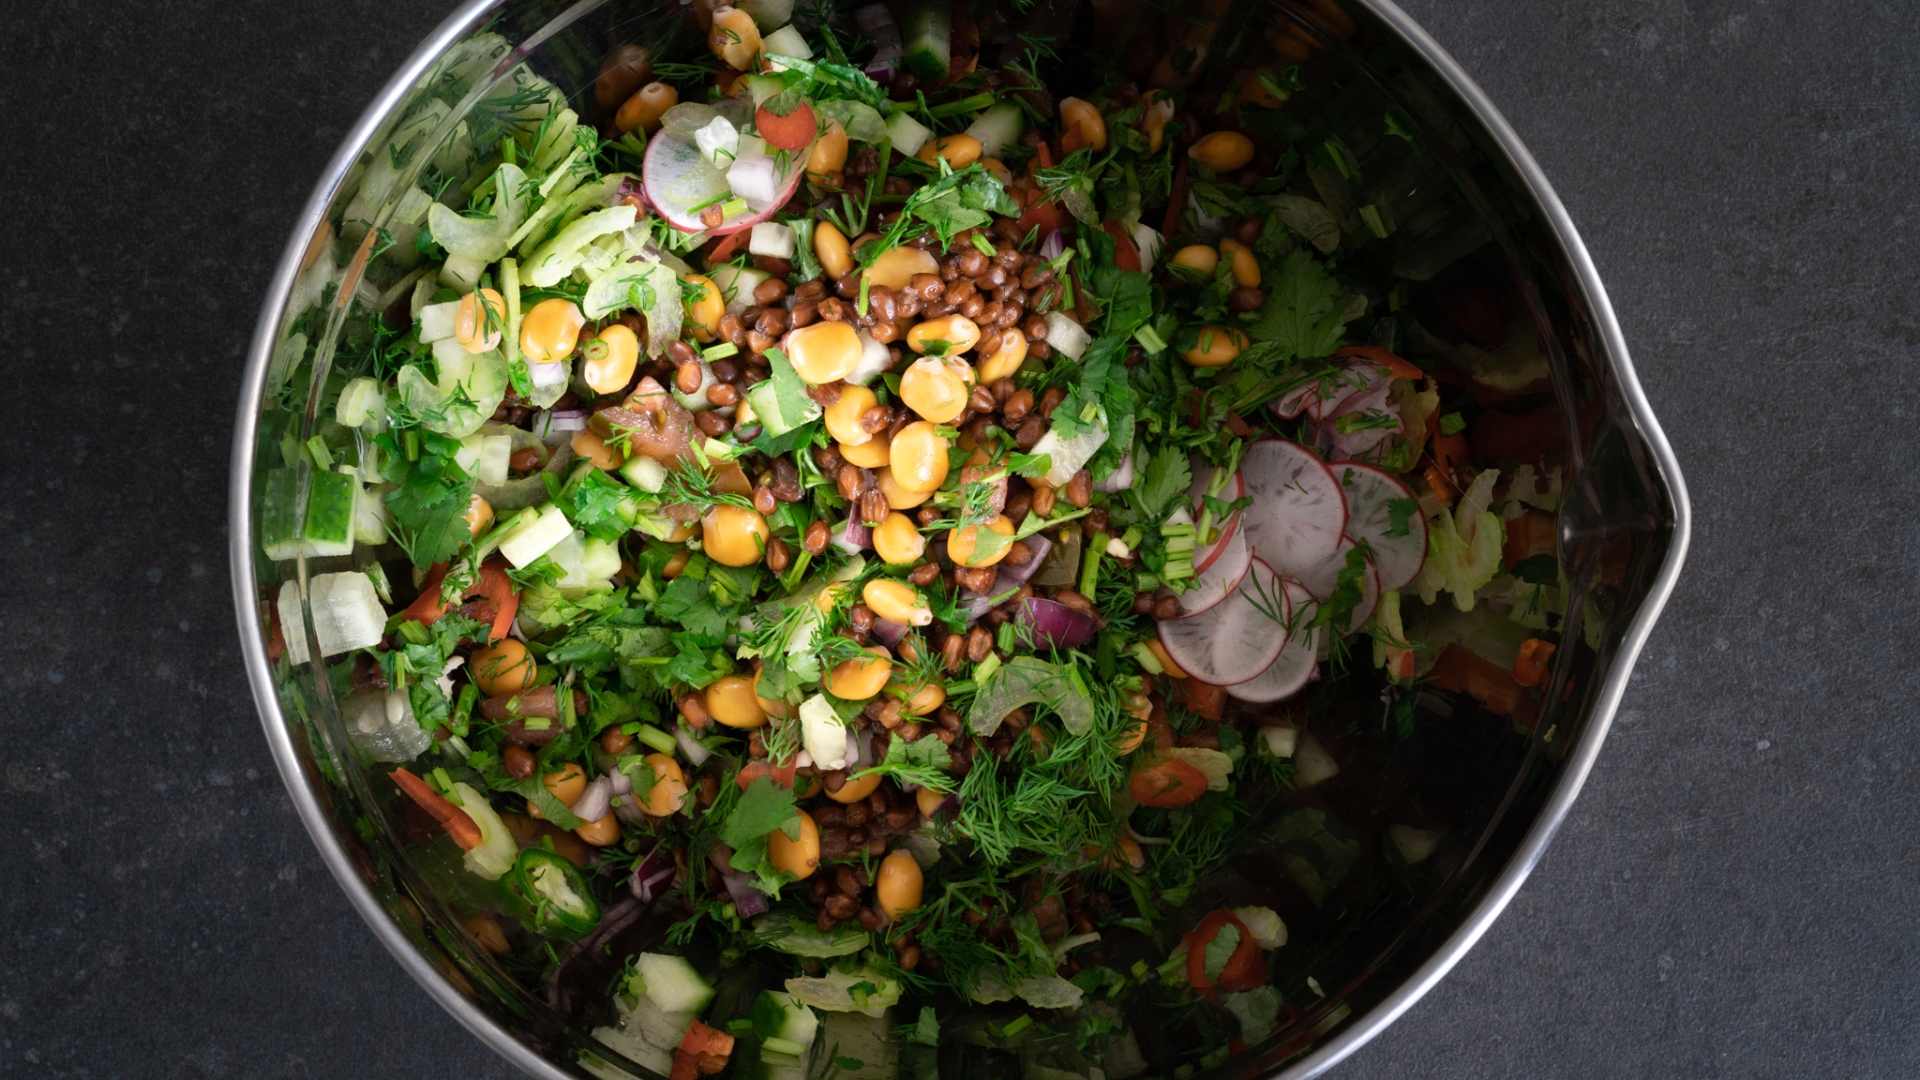 Good Crop Urgetreide - Salat